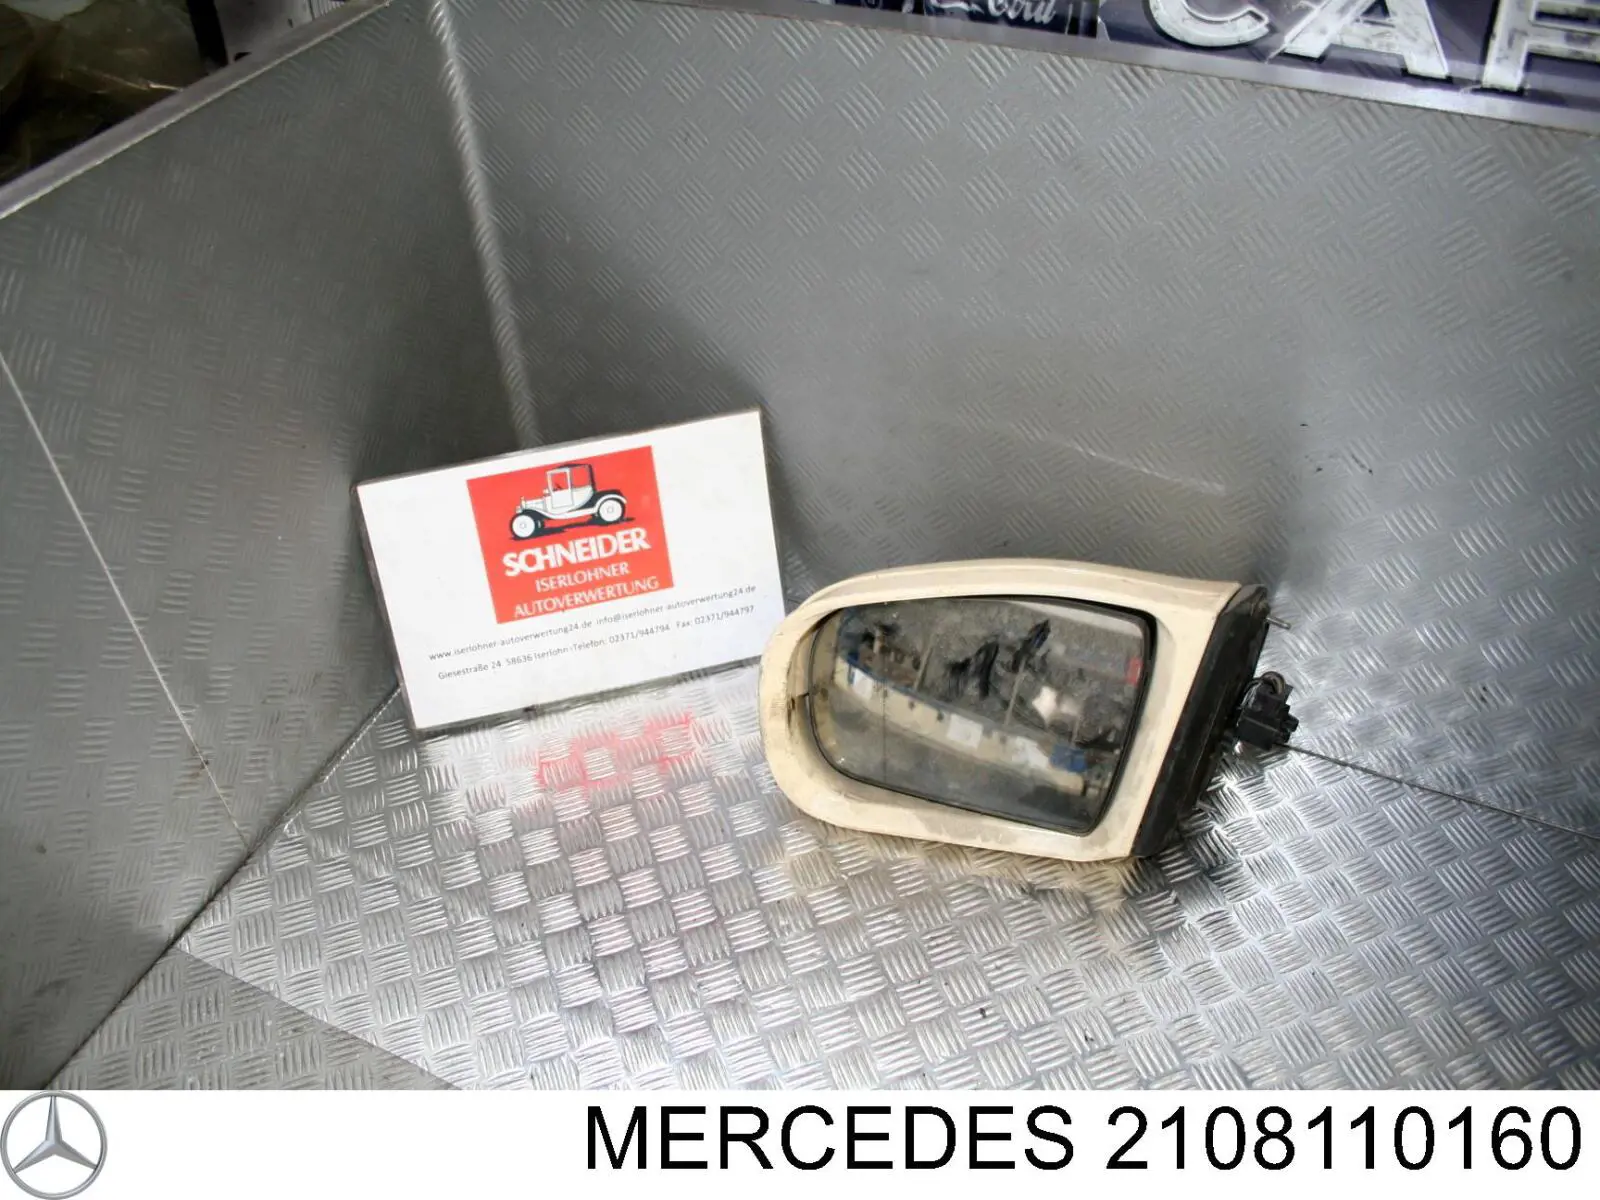 2108110160 Mercedes placa sobreposta (tampa do espelho de retrovisão esquerdo)